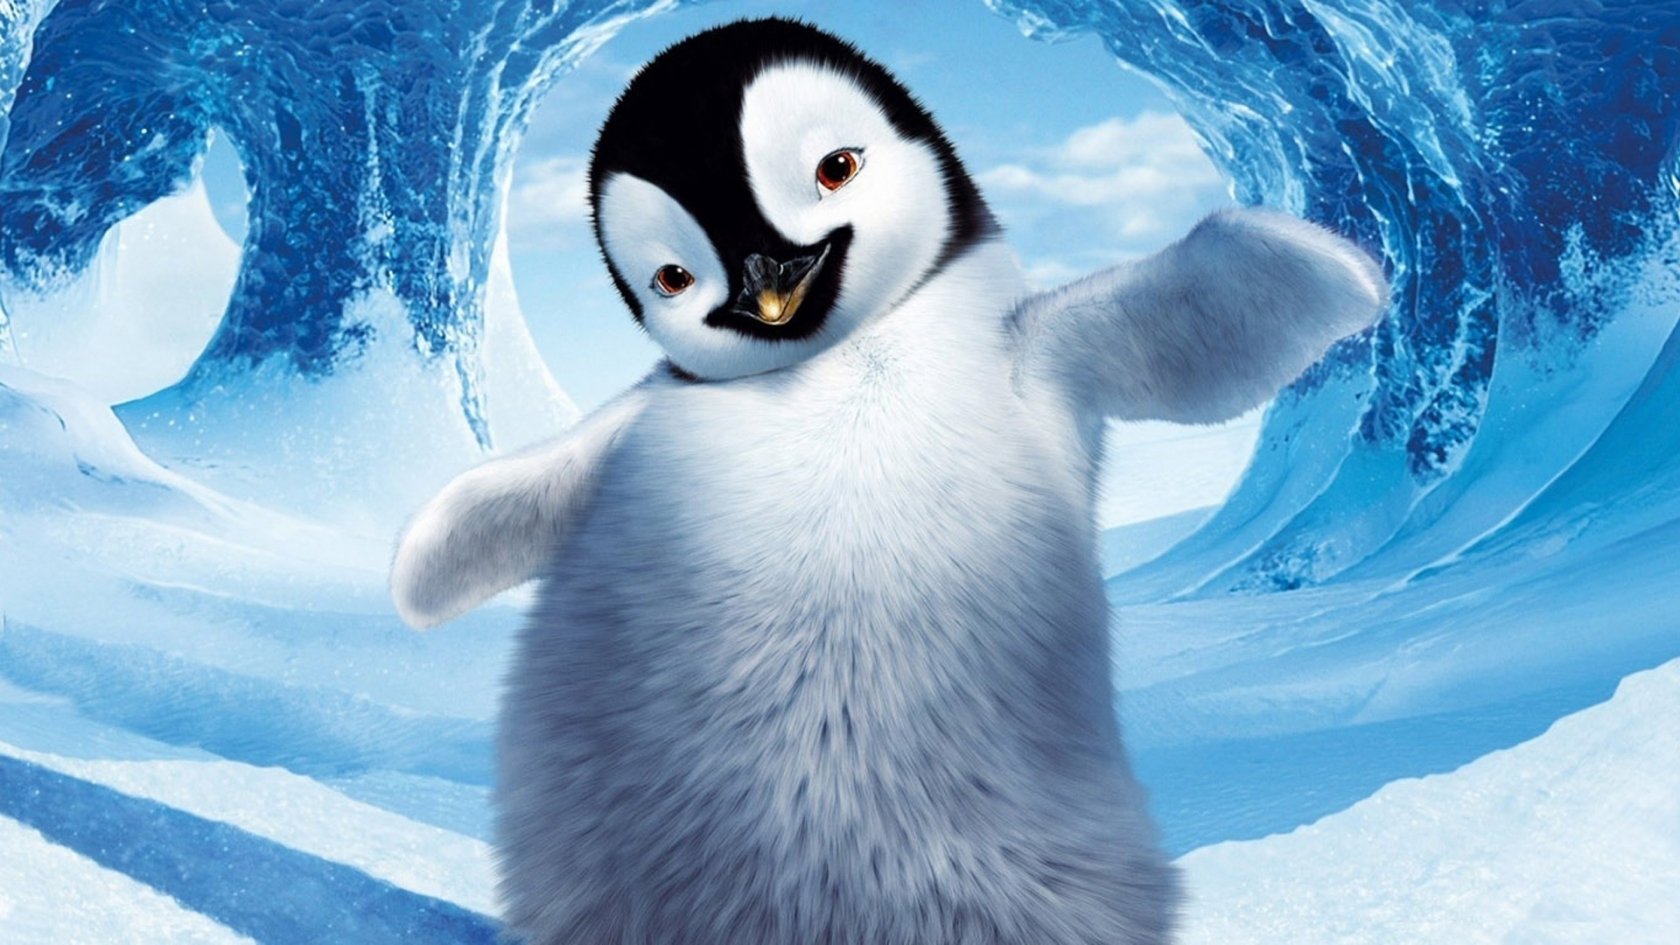 Happy Feet Penguin for 1680 x 945 HDTV resolution